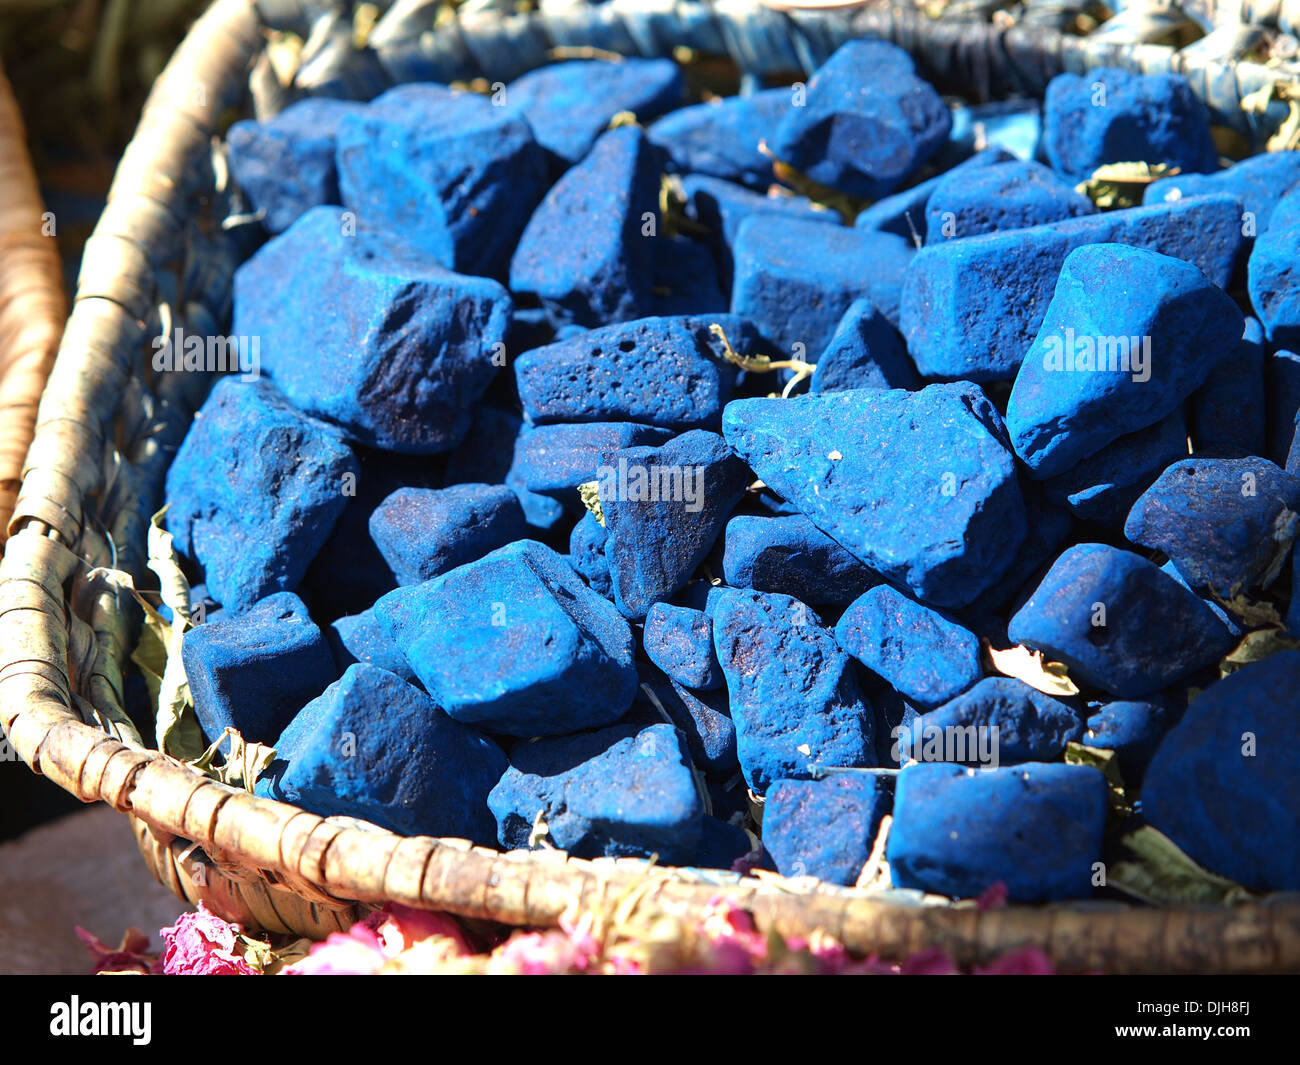 Blöcke der indigo Farbe auf Markt in Marokko Stockfotografie - Alamy